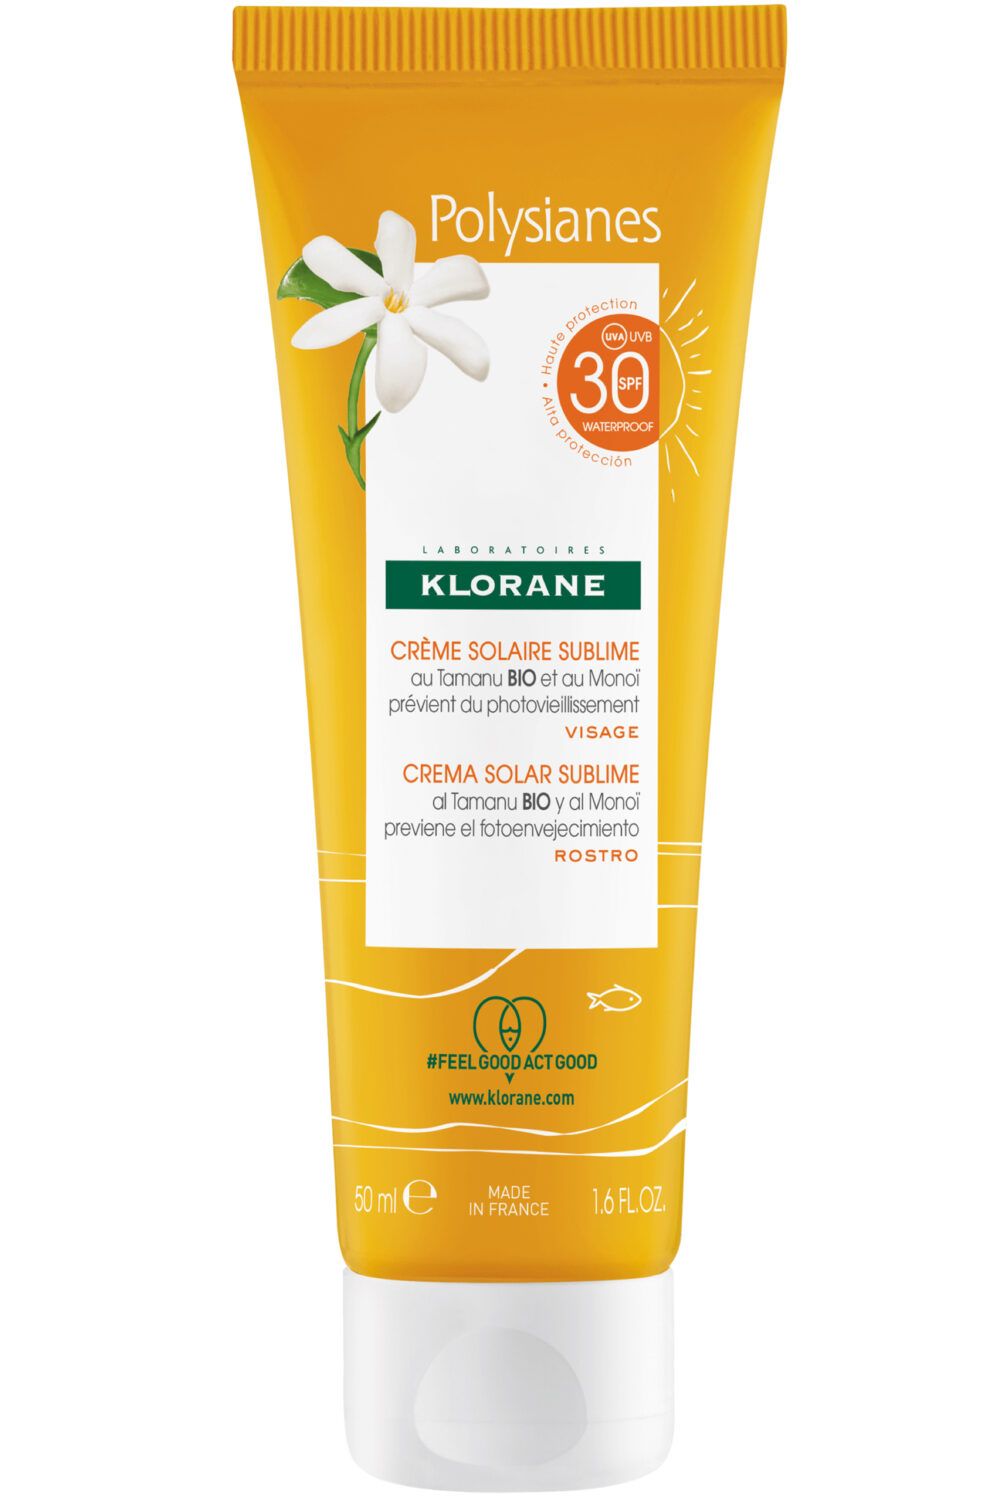 Klorane - Crème solaire sublime SPF 30 au Tamanu bio et Monoï